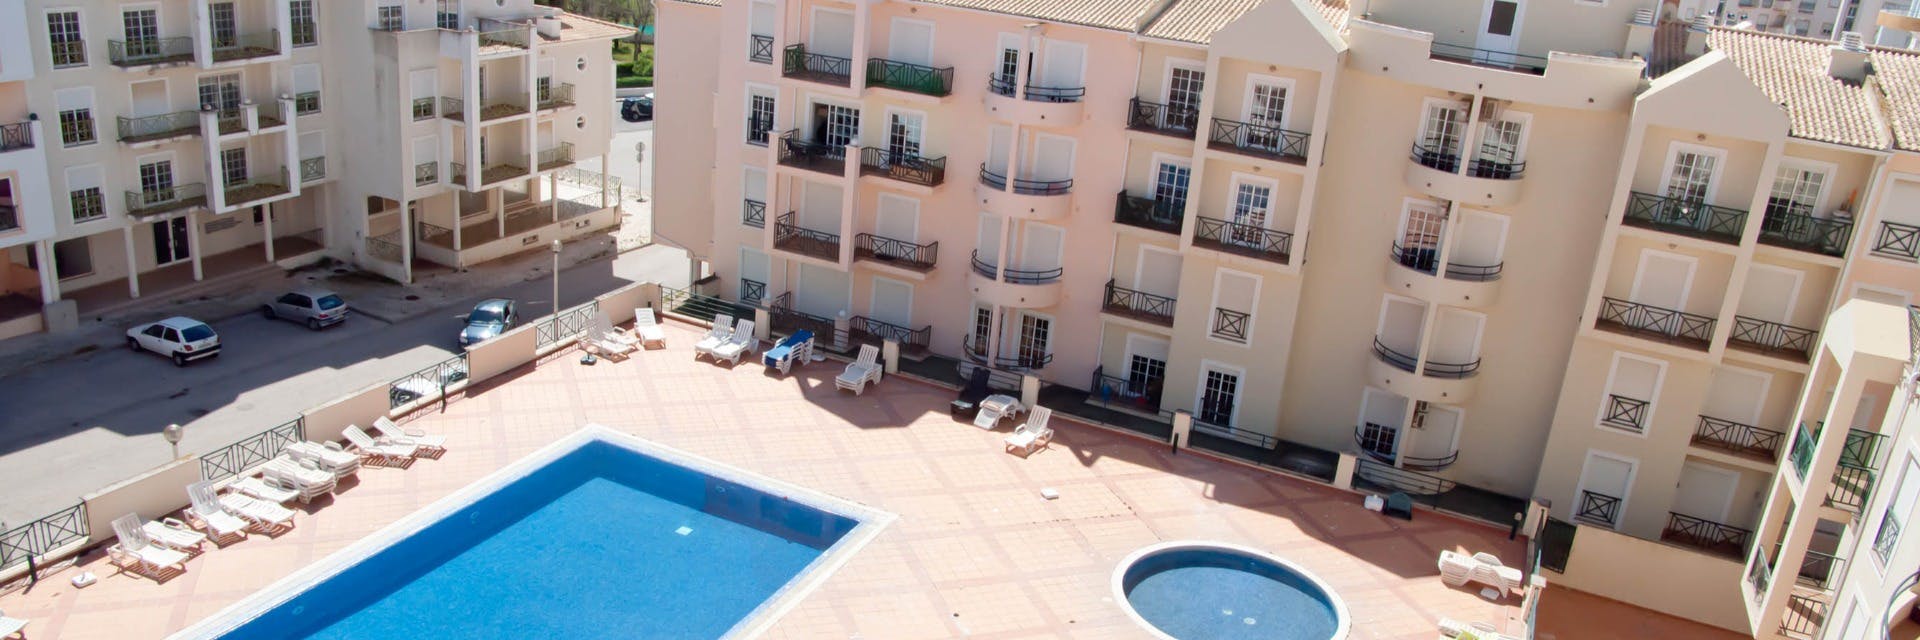 Appartement in de Algarve , het zonnige Portugal